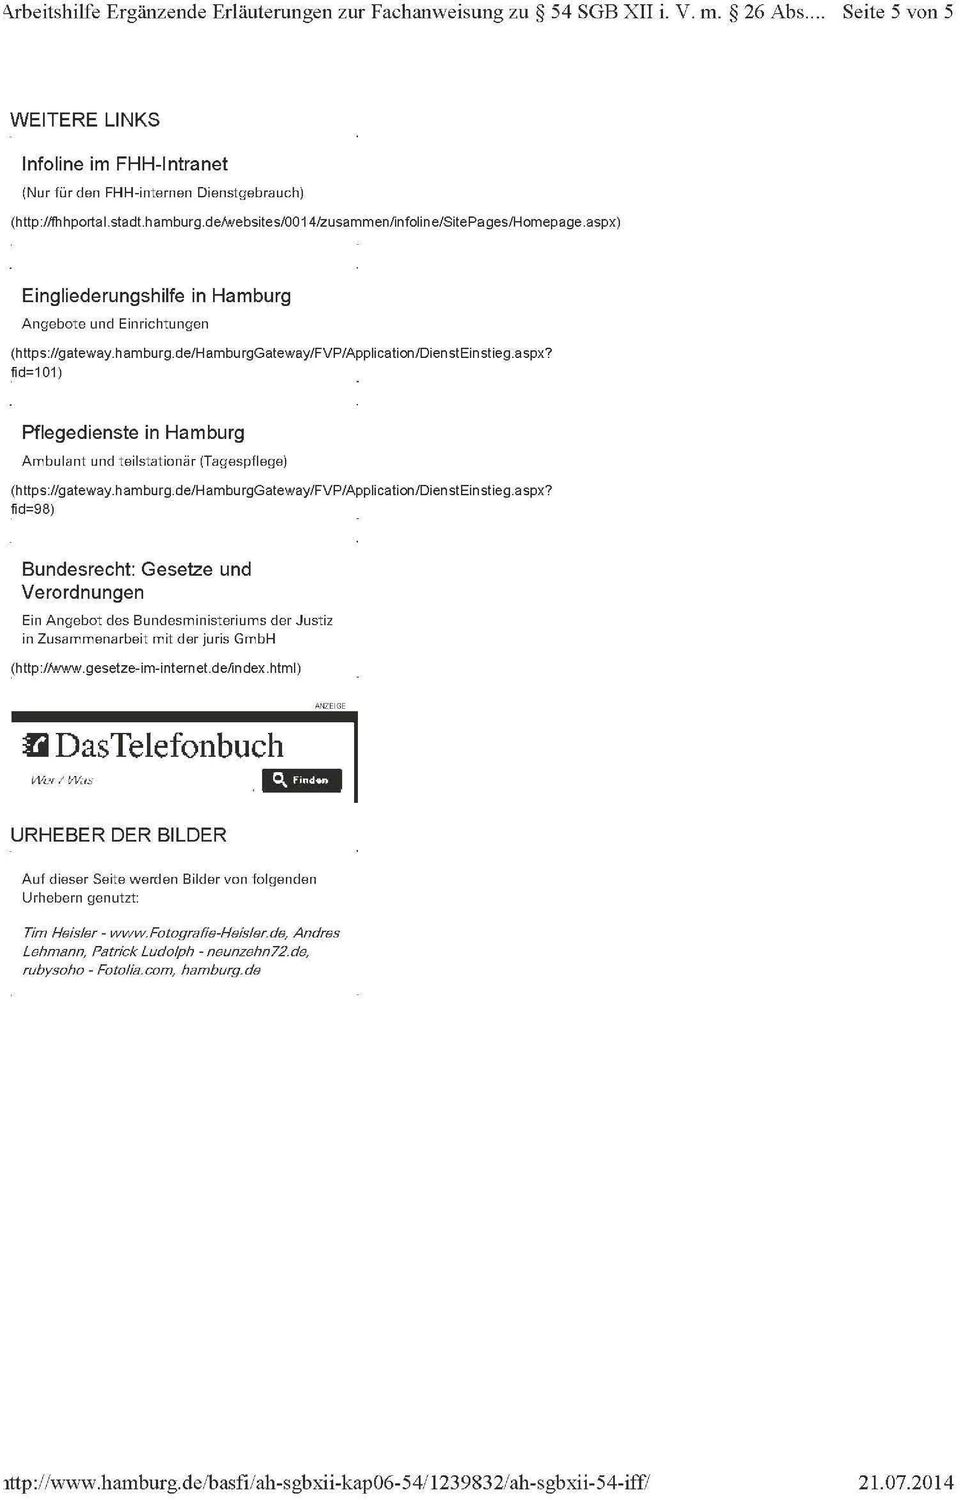 aspx) Eingliederungshilfe in Hamburg Angebote und Einrichtungen (https://gateway.hamburg.de/hamburggateway/fvp/application/diensteinstieg.aspx? fid=101) Pflegedienste in Hamburg Ambulant und teilstationär (Tagespflege) (https://gateway.